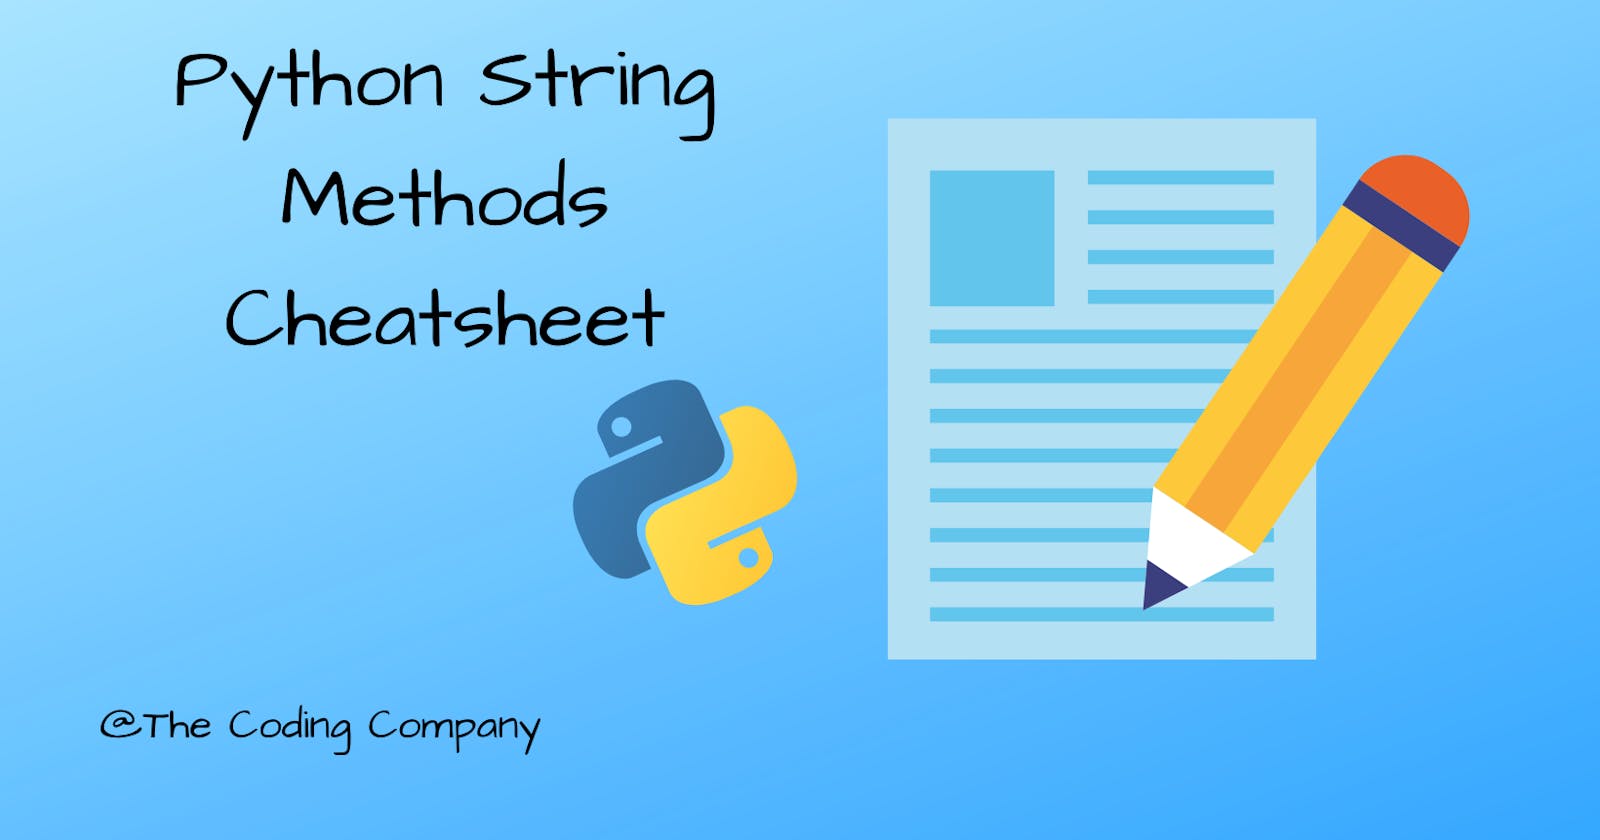 Python String Methods Cheatsheet